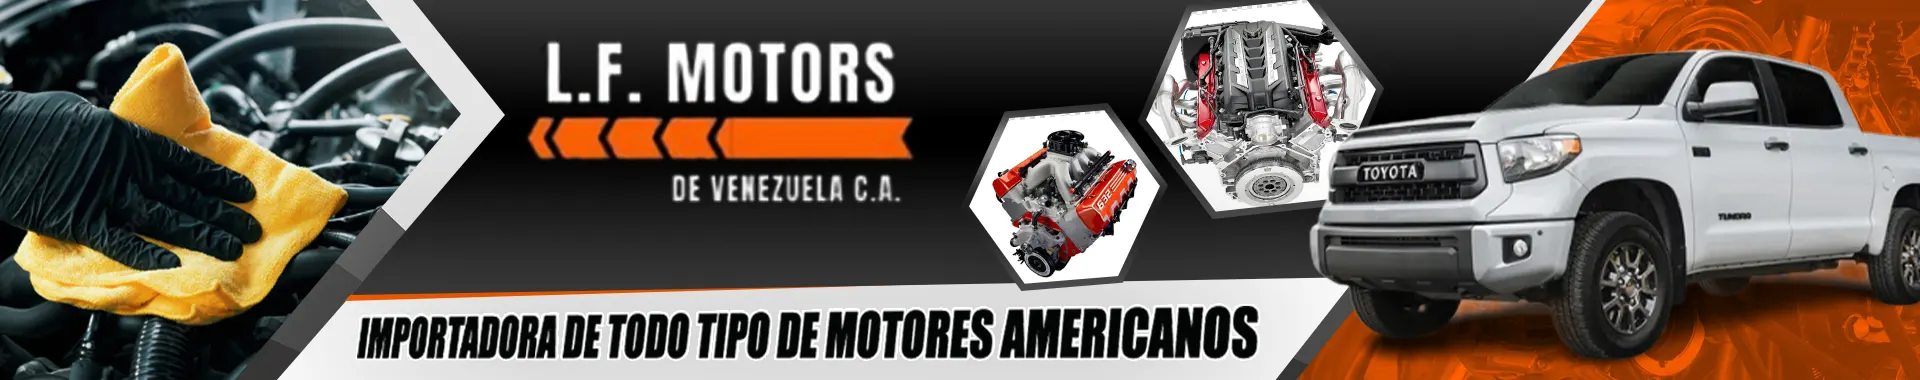 Imagen 2 del perfil de LF Motors de Venezuela